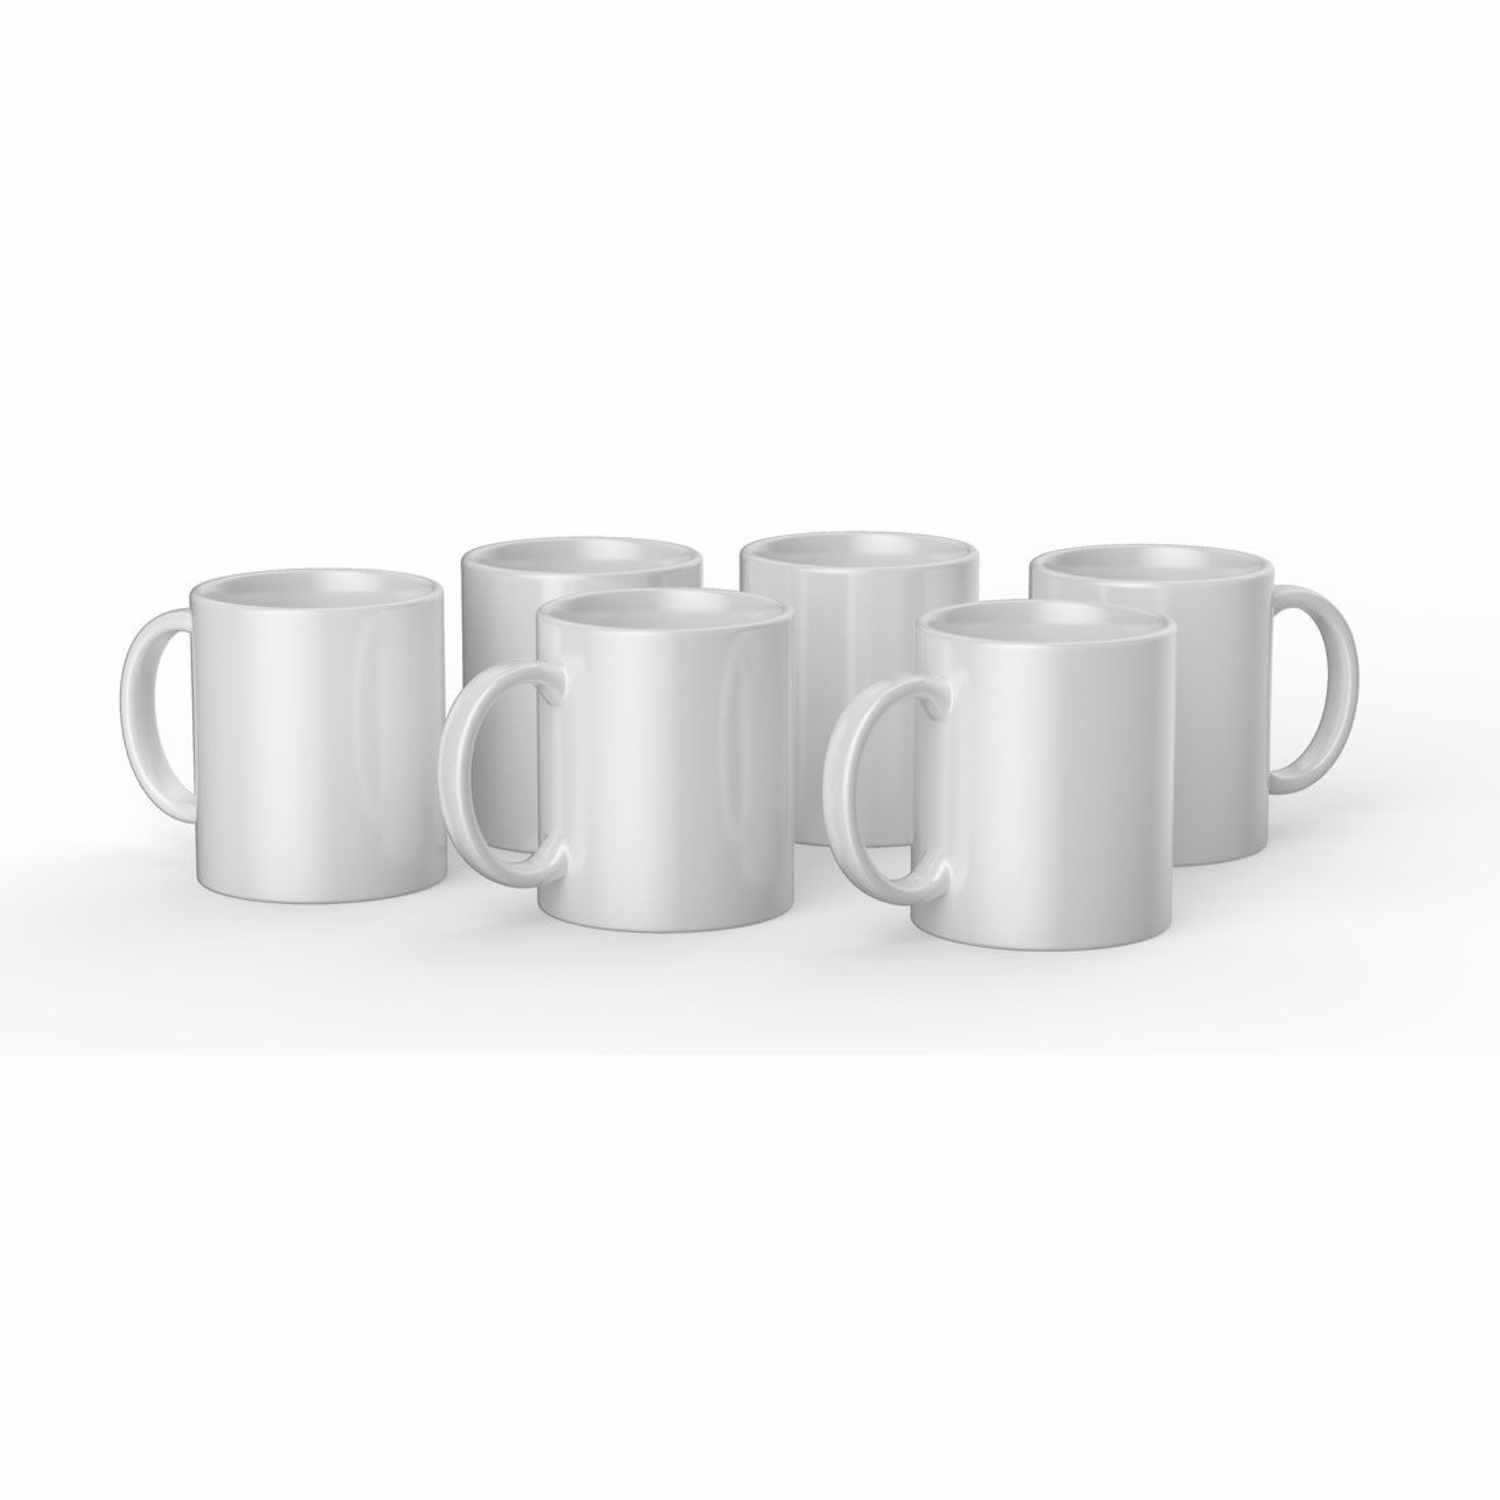 Keramiktassen für Mug Press weiß 340ml 6 Stück